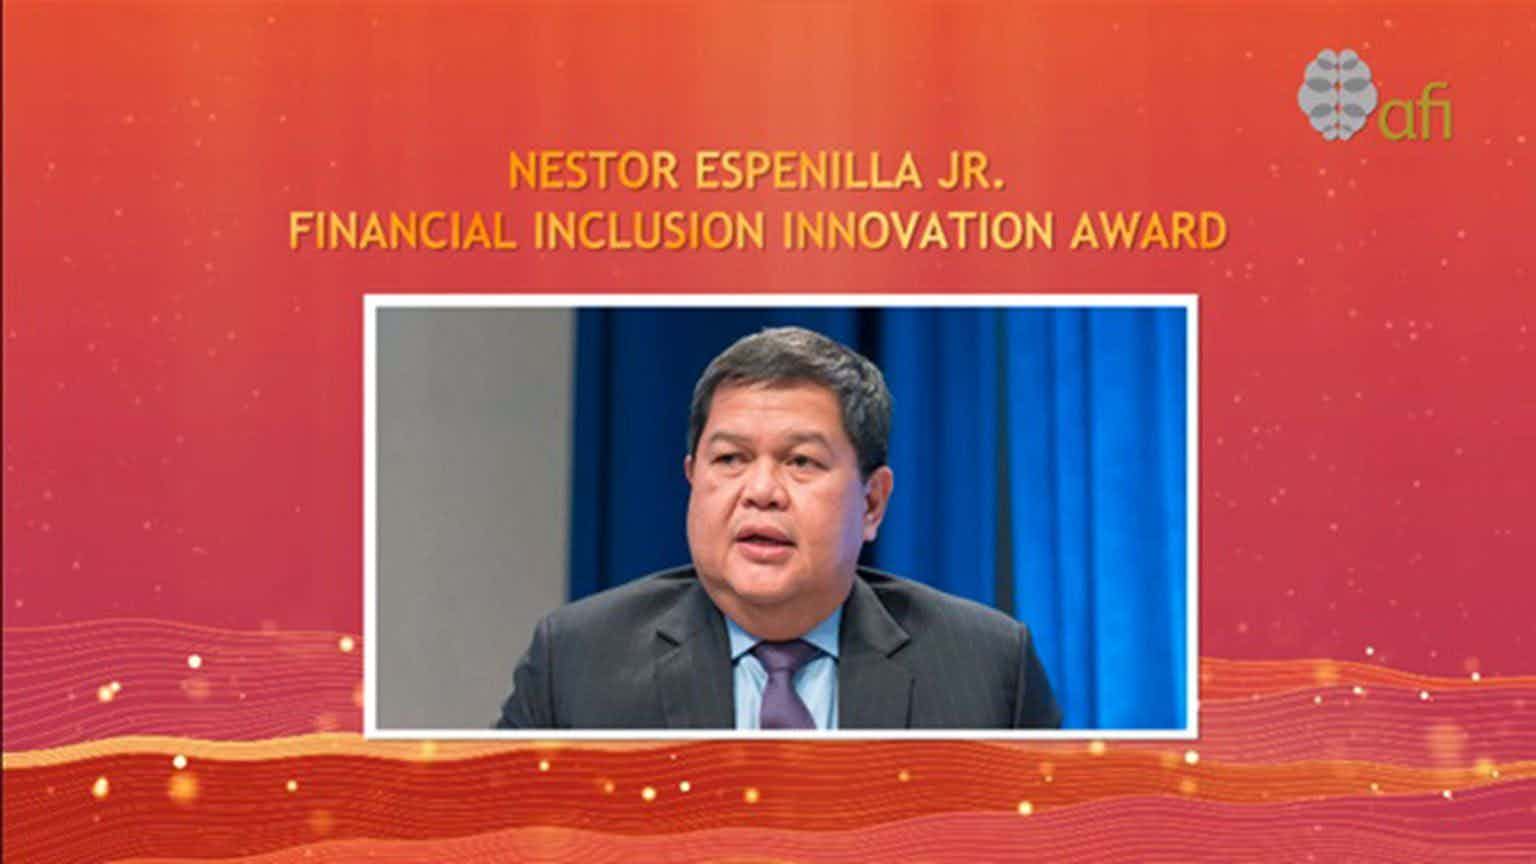 BSP launches Nestor Espenilla Jr Financial Inclusion Innovation Award